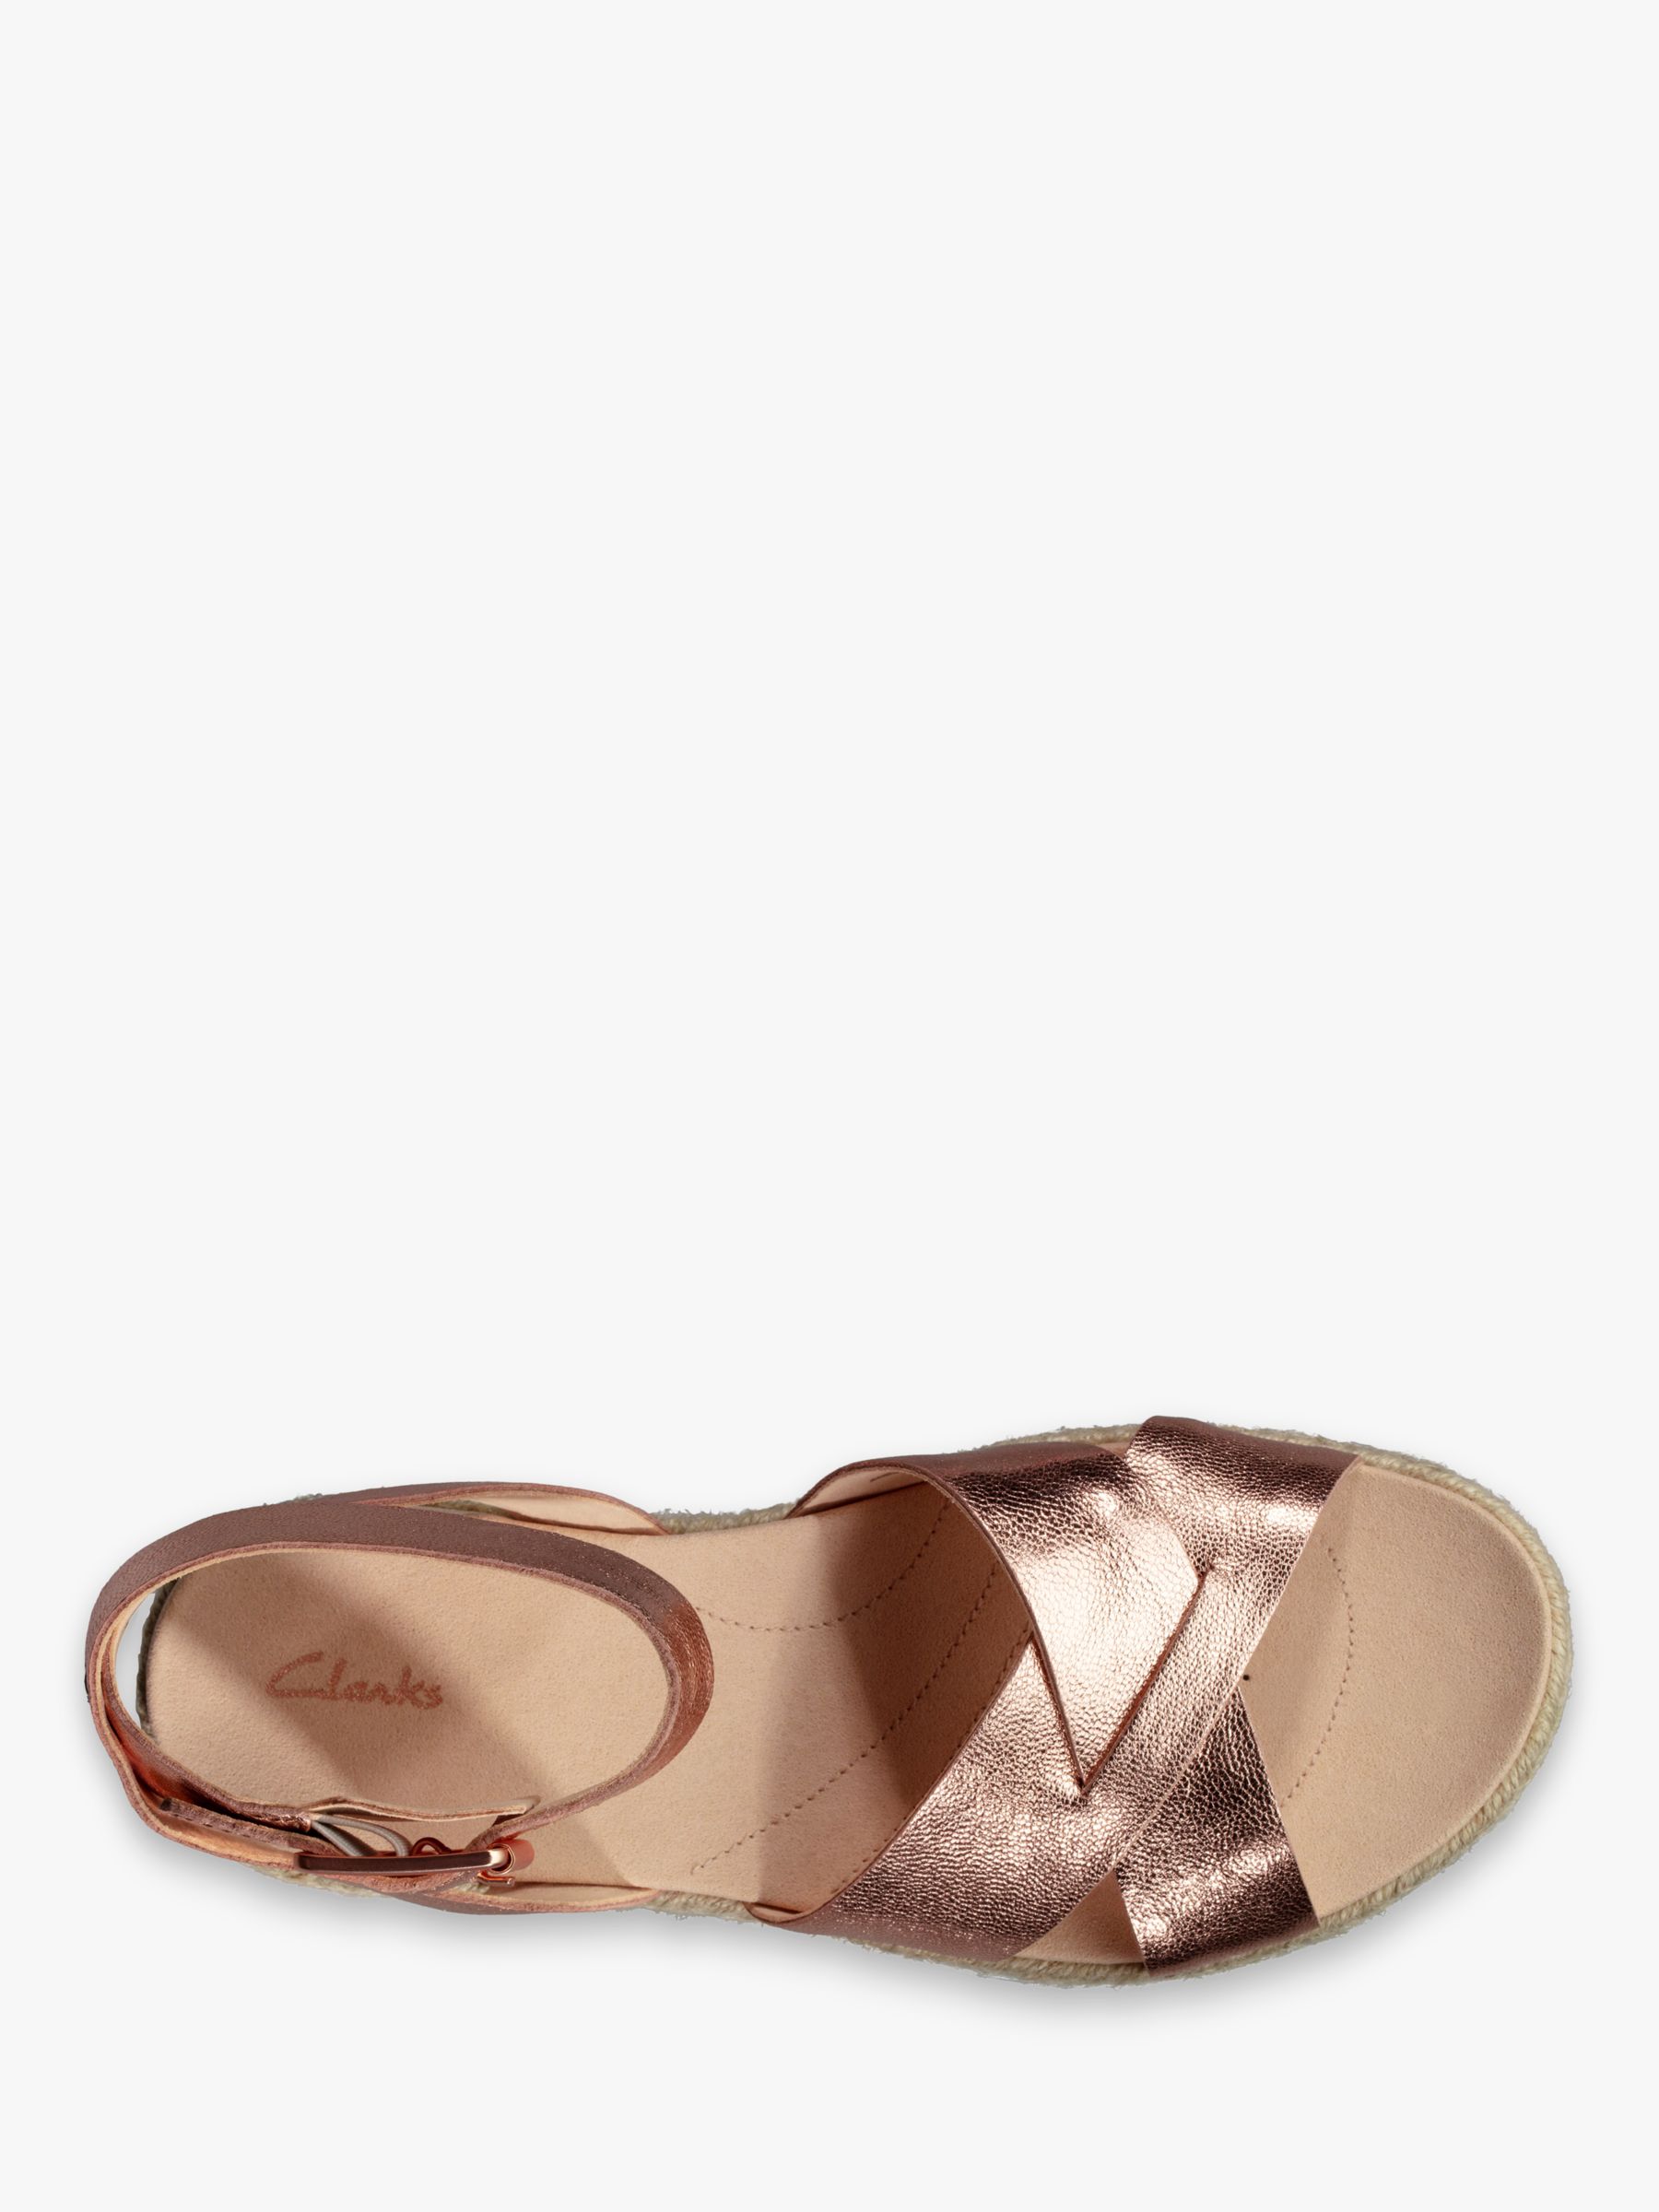 rose gold clarks sandals